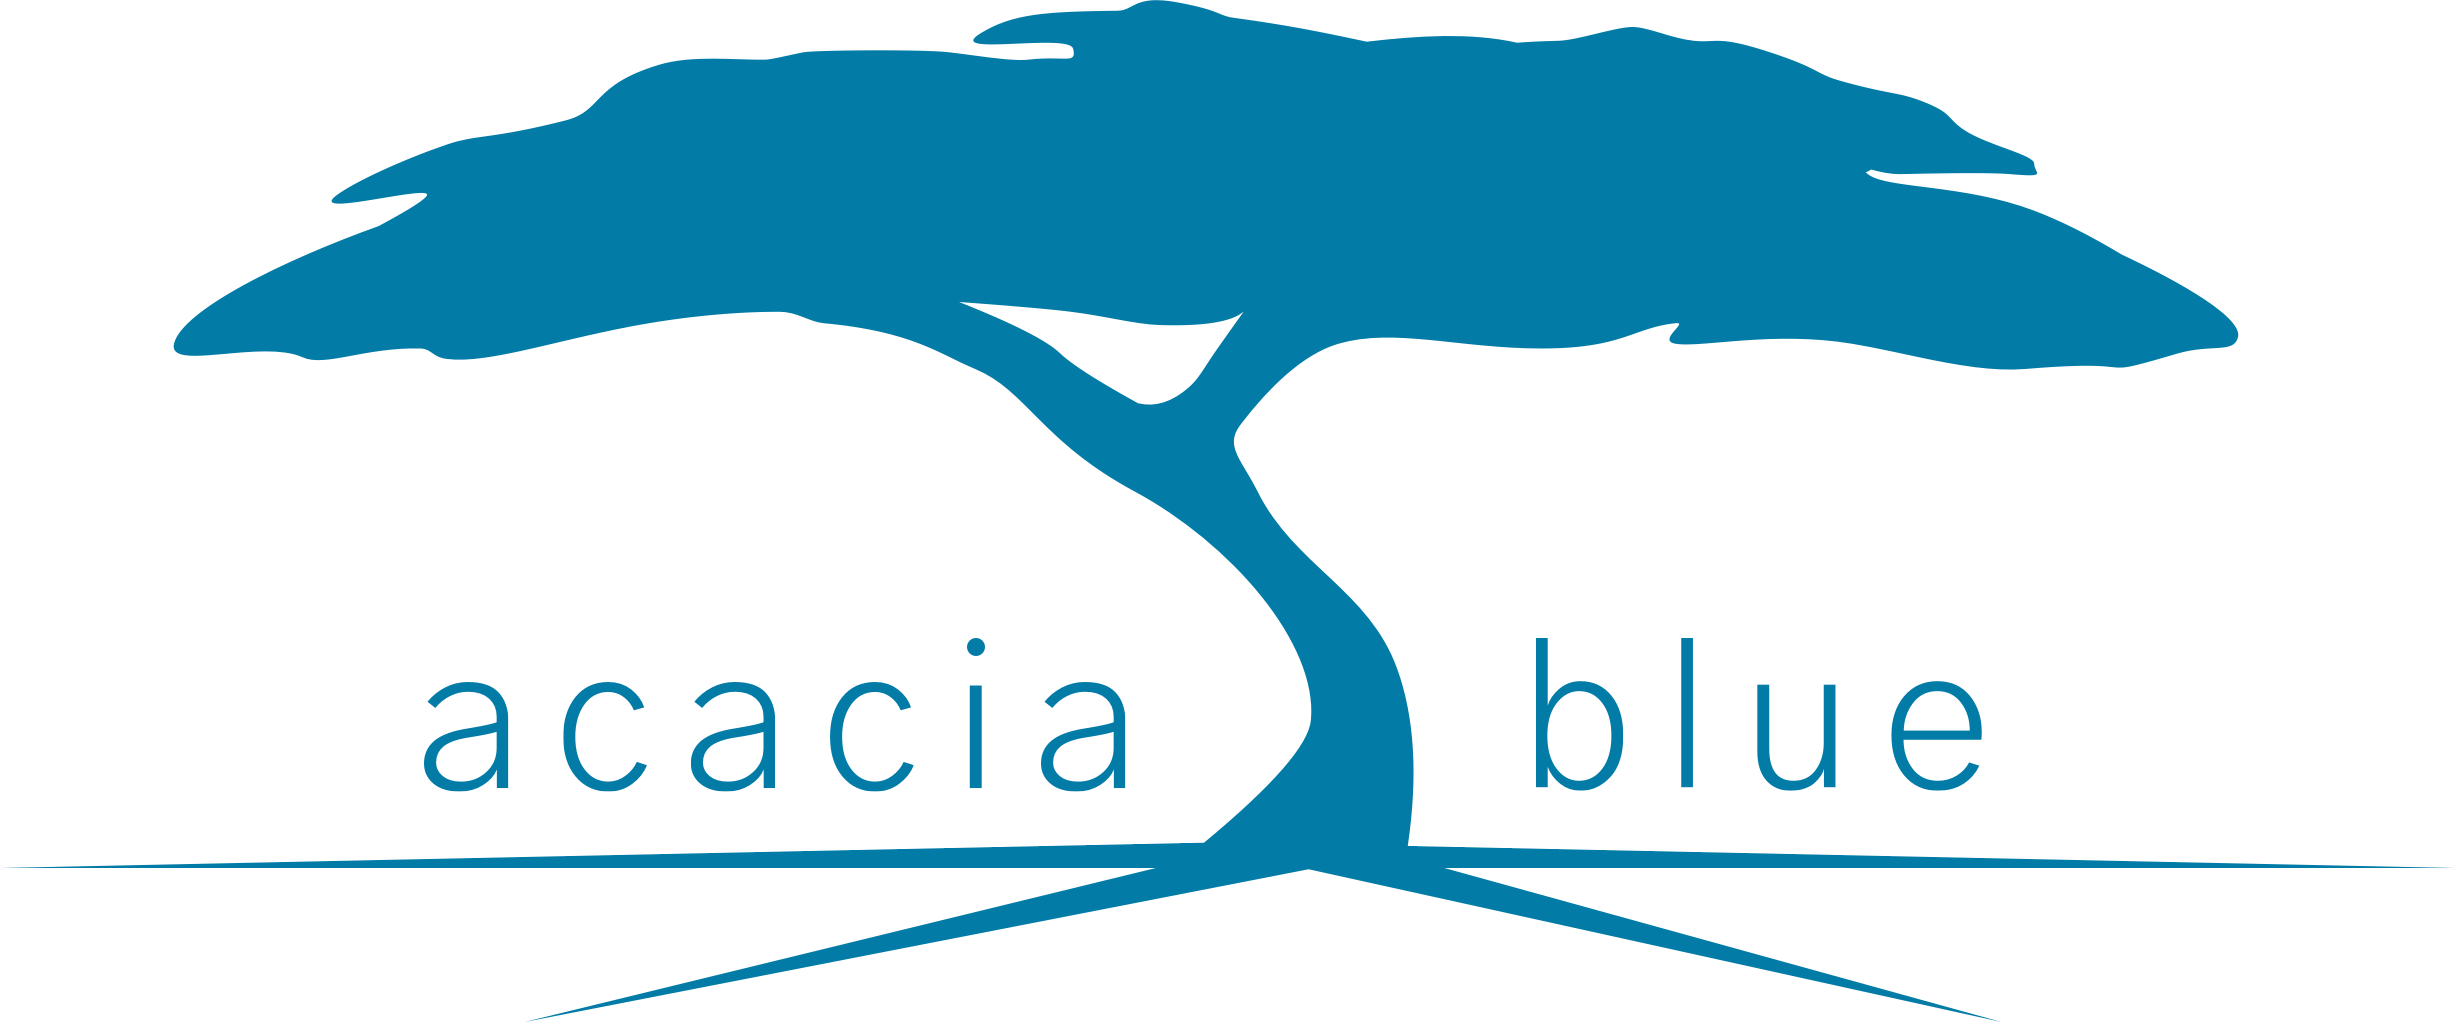 acacia blue